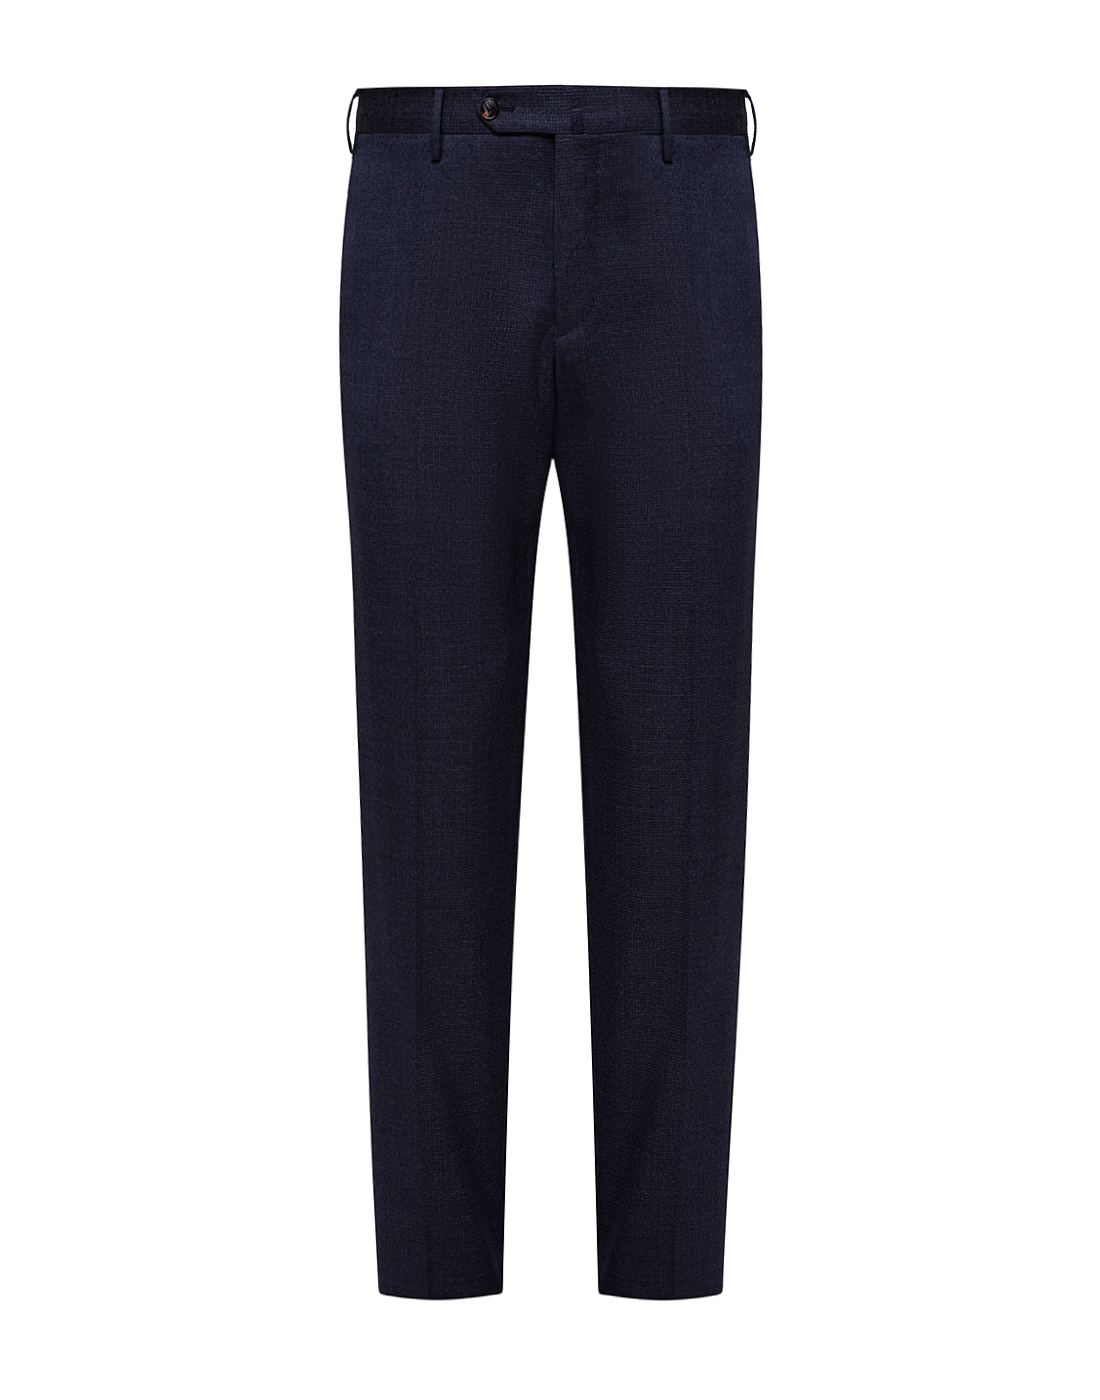 Мужские темно-синие шерстяные брюки PT SMZ87 0360-1